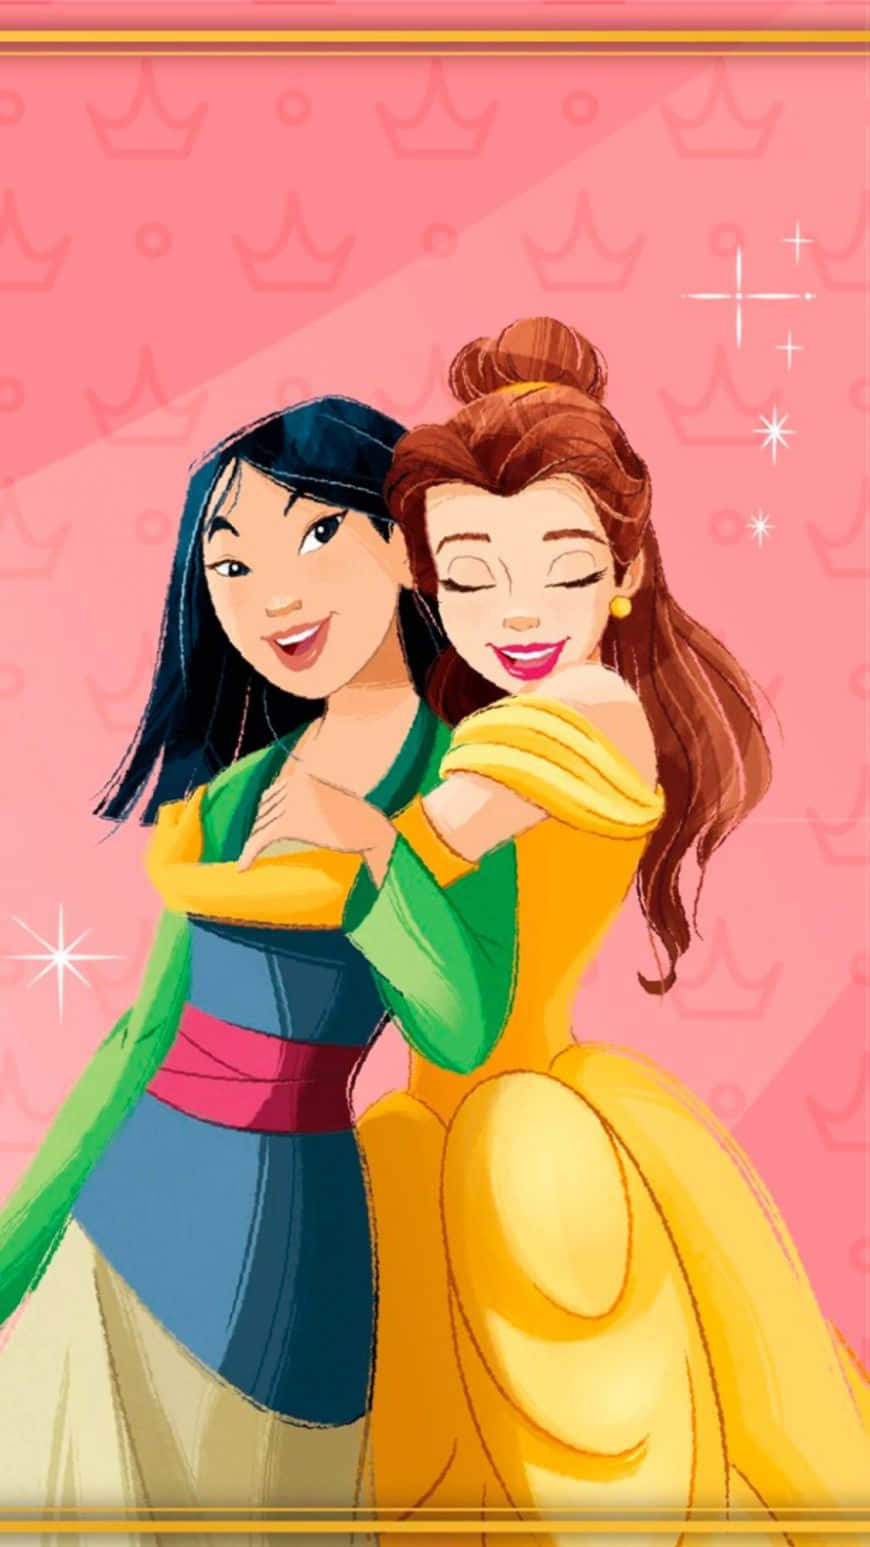 Lemagiche Principesse Disney Si Riuniscono Insieme Nell'amicizia E Nell'amore.